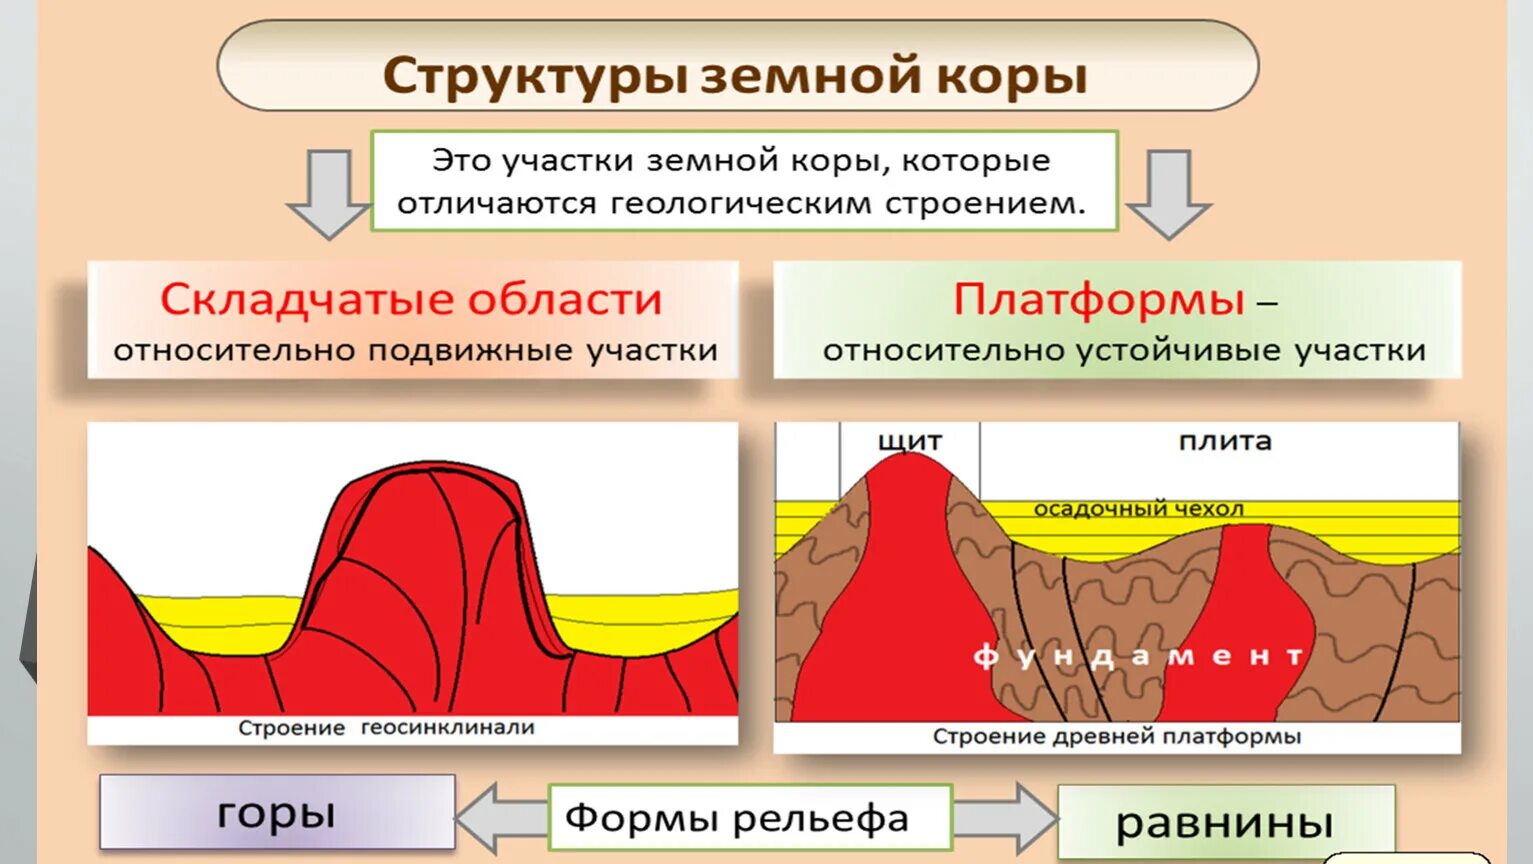 Структуры земной коры складчатые области. Структуры земной коры платформы. Основные тектонические структуры. Строение складчатой области.